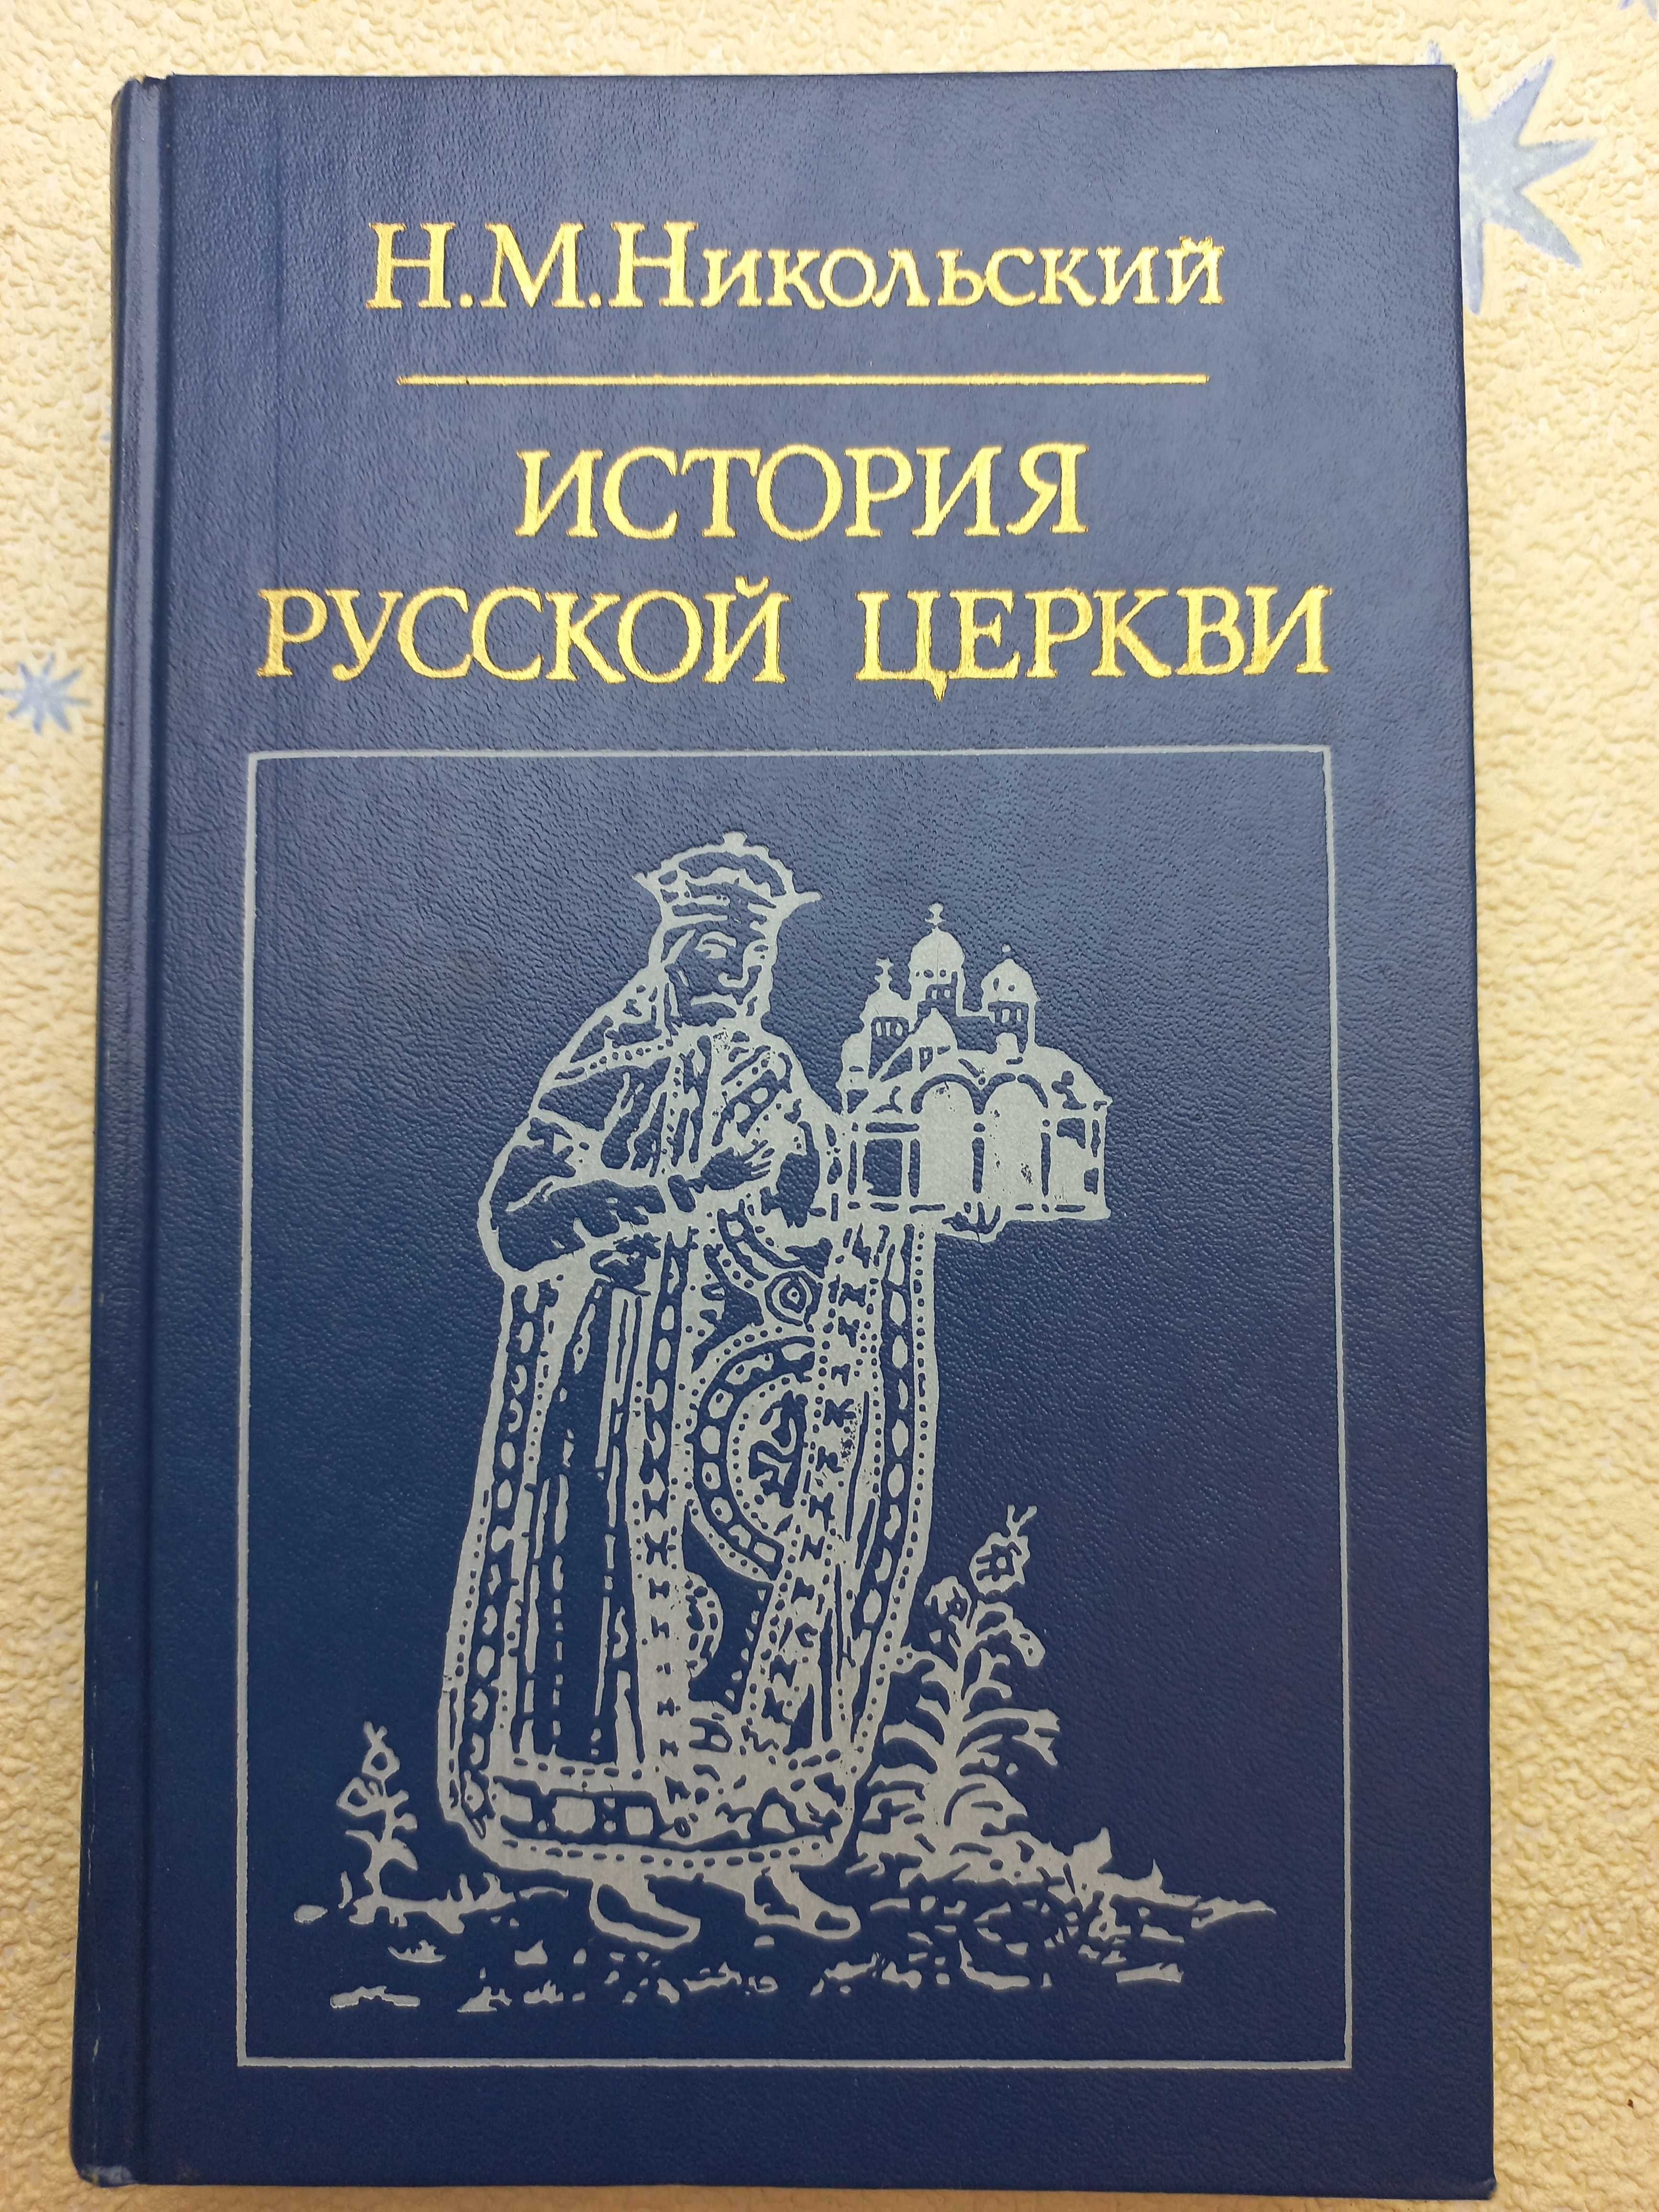 История Русской церкви" Никольский Н.М